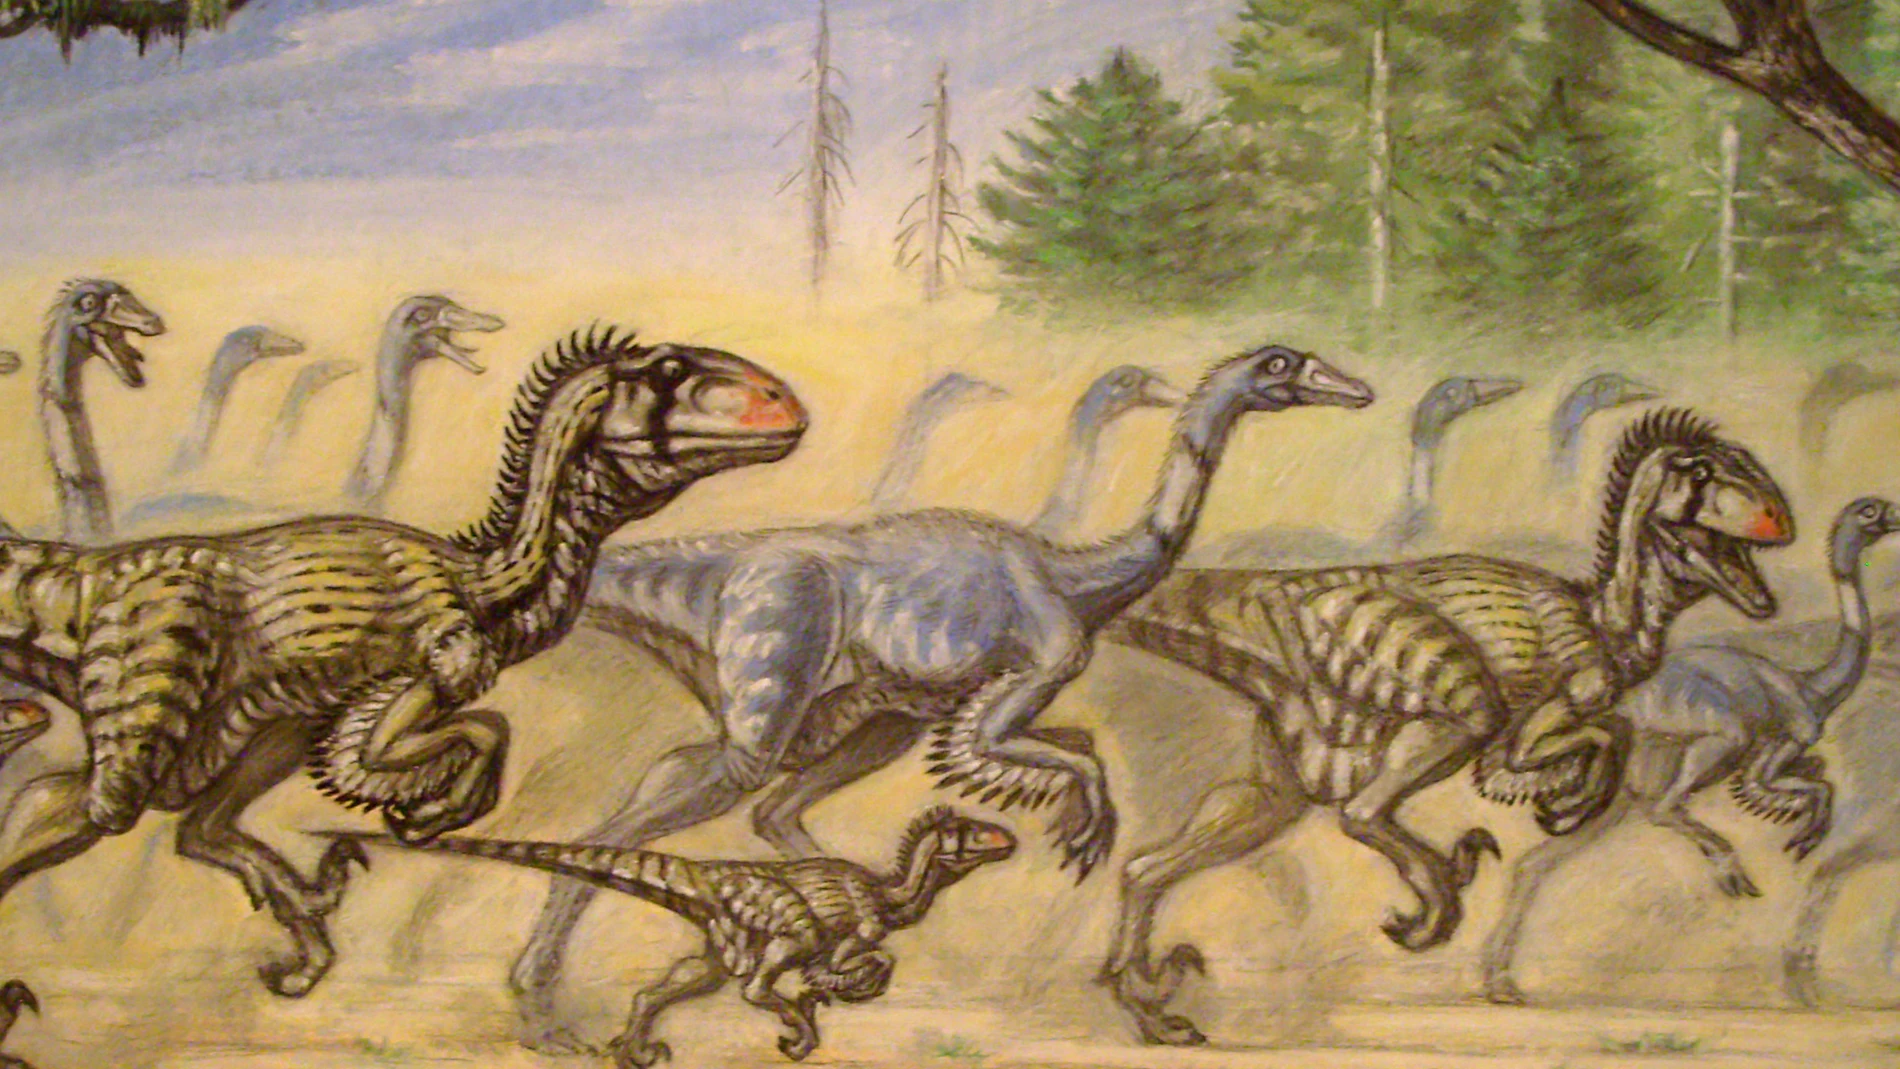 De verdad cazaban en grupo los dinosaurios?